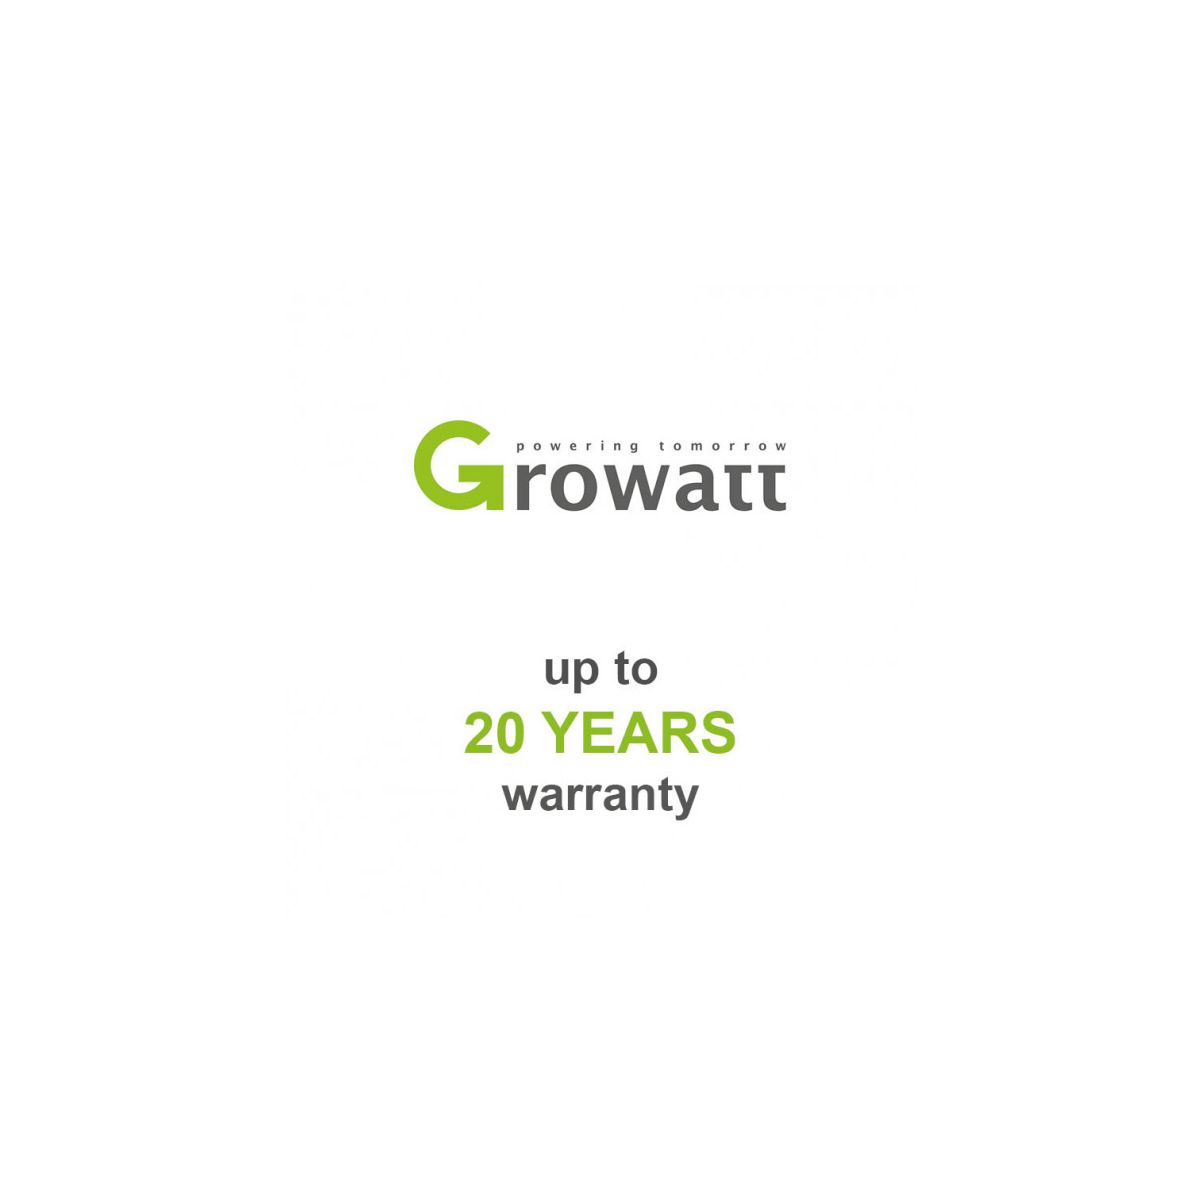 Growatt SPH 4600 Warranty extenstion for 20 years